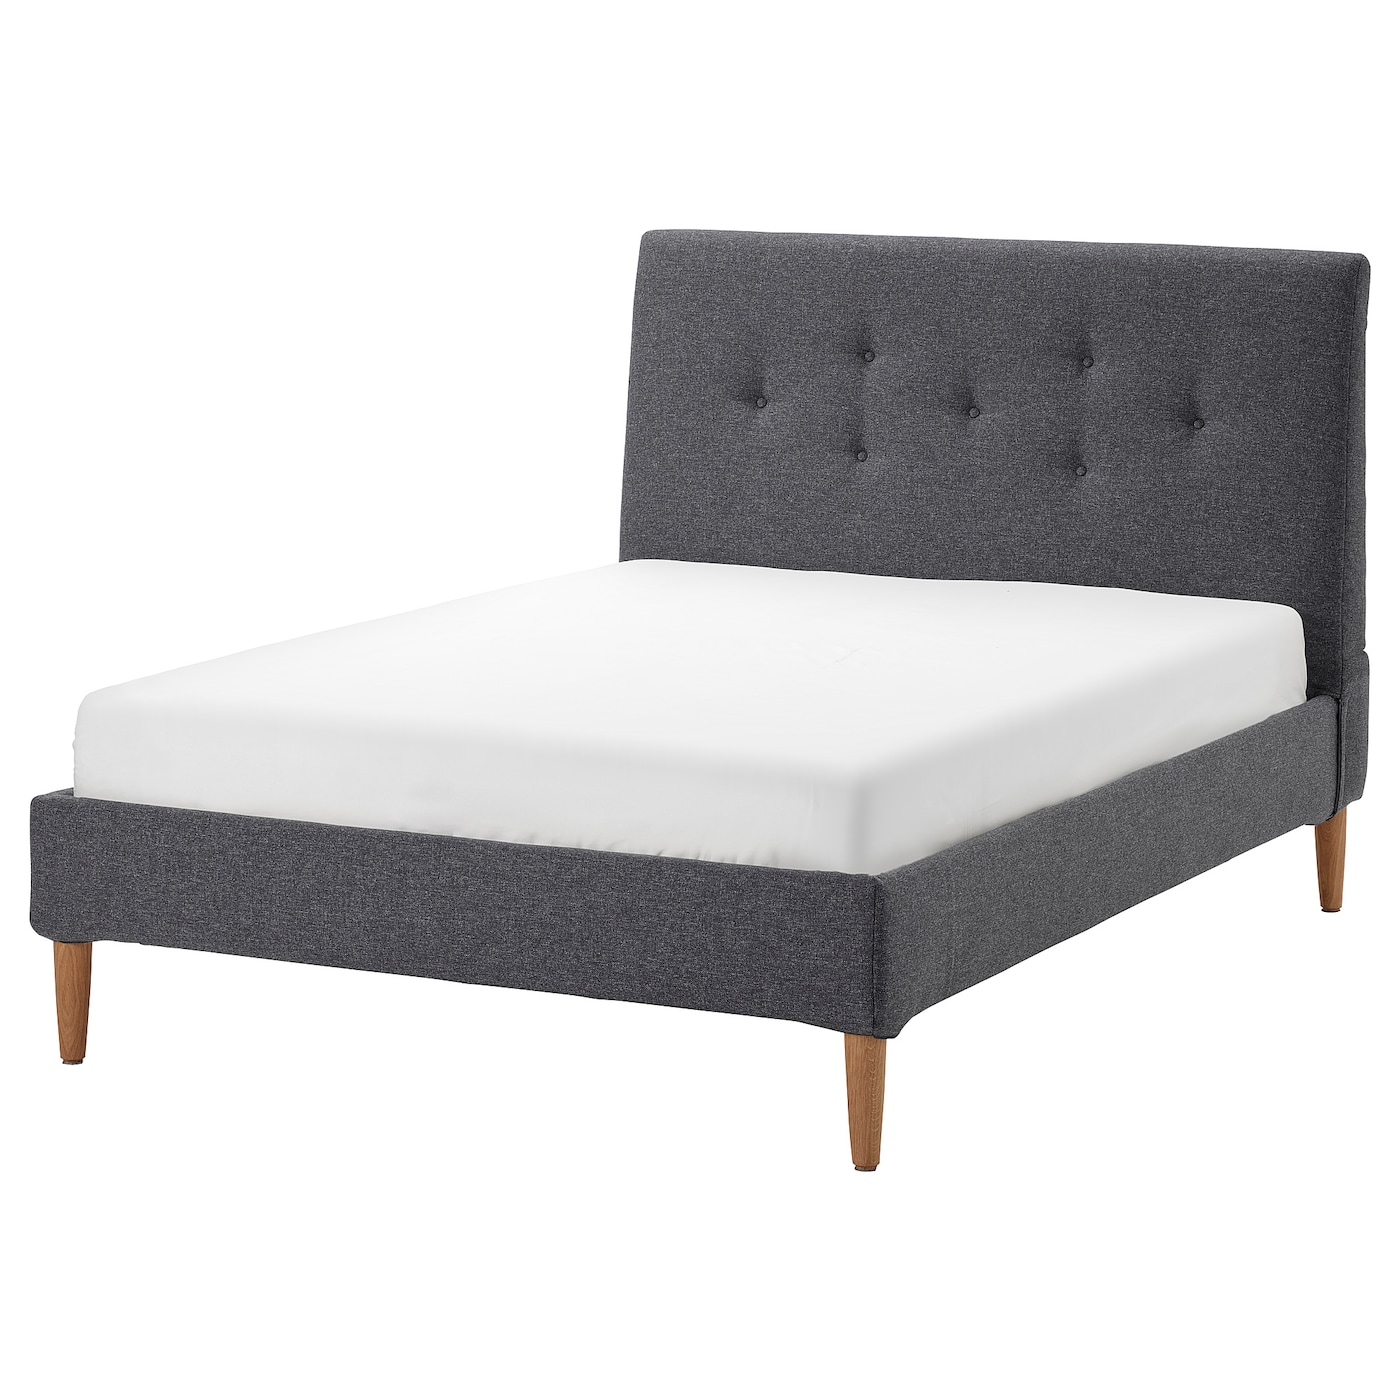 Двуспальная кровать - IKEA IDANÄS/IDANAS, 200х140 см, темно-серый, ИДАНЭС ИКЕА